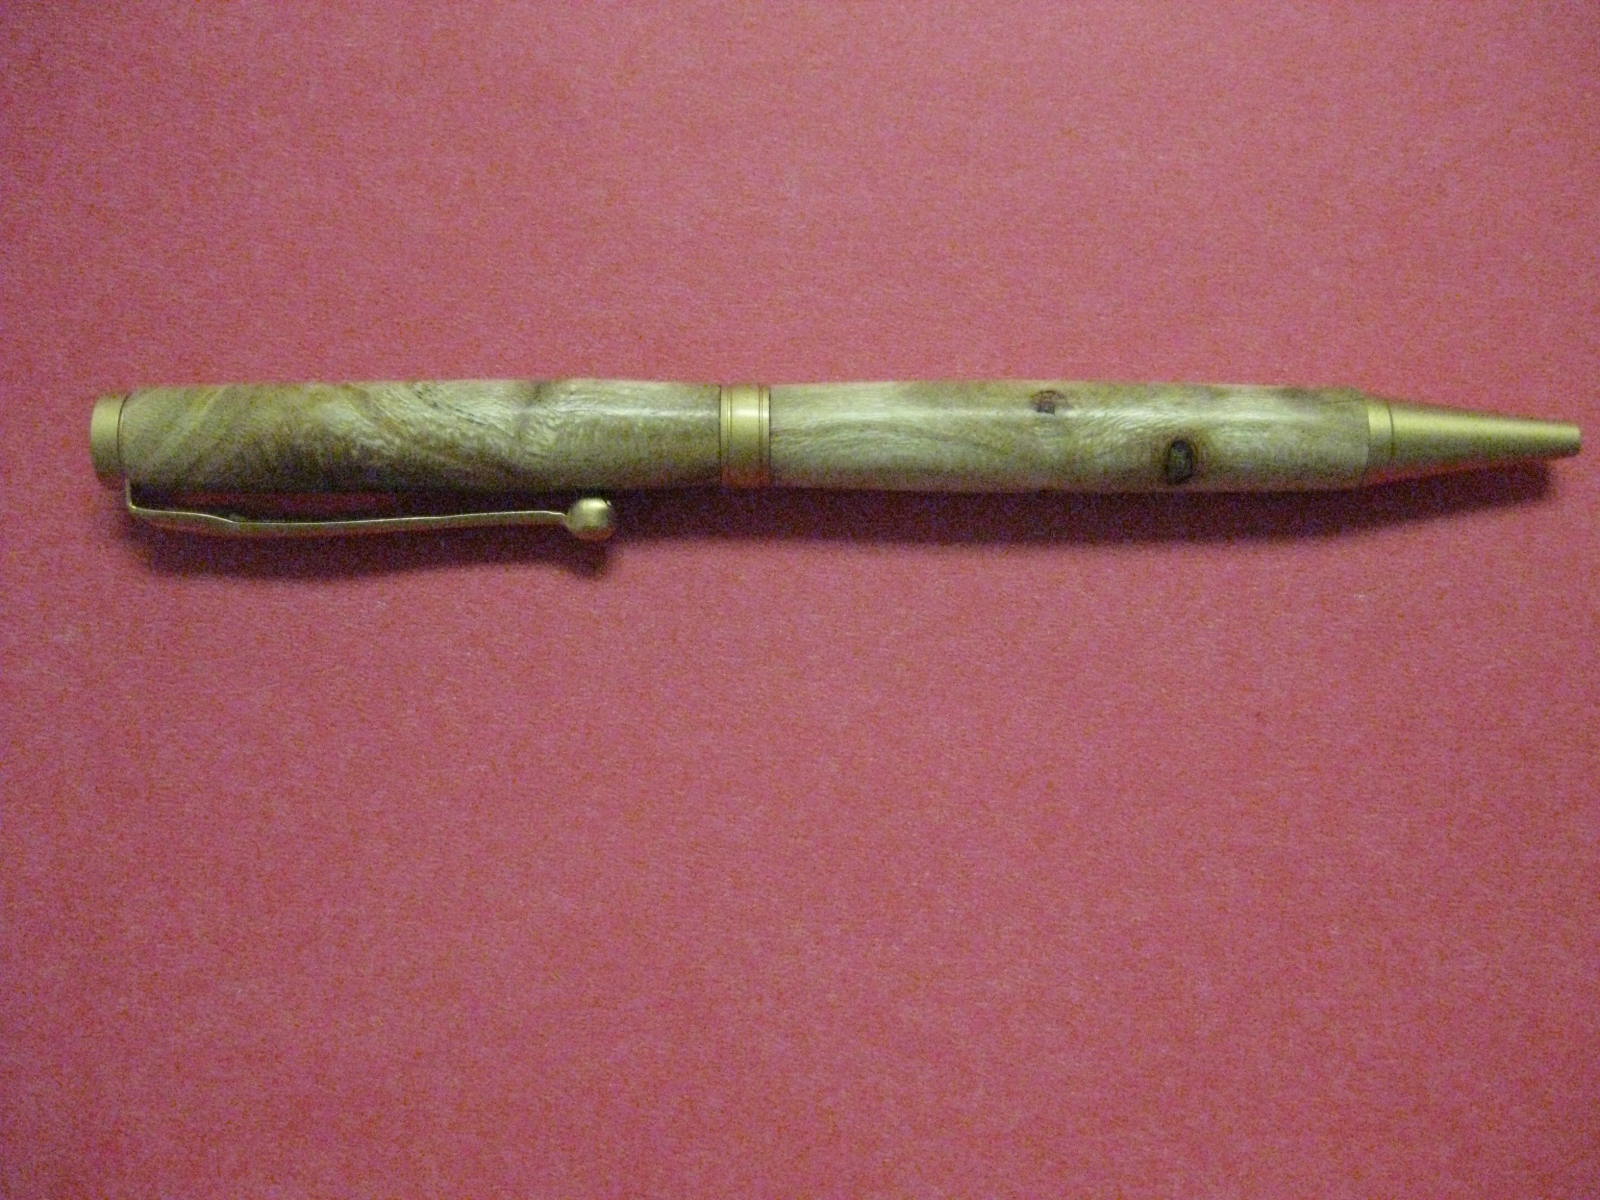 Cedar pen on gun metal